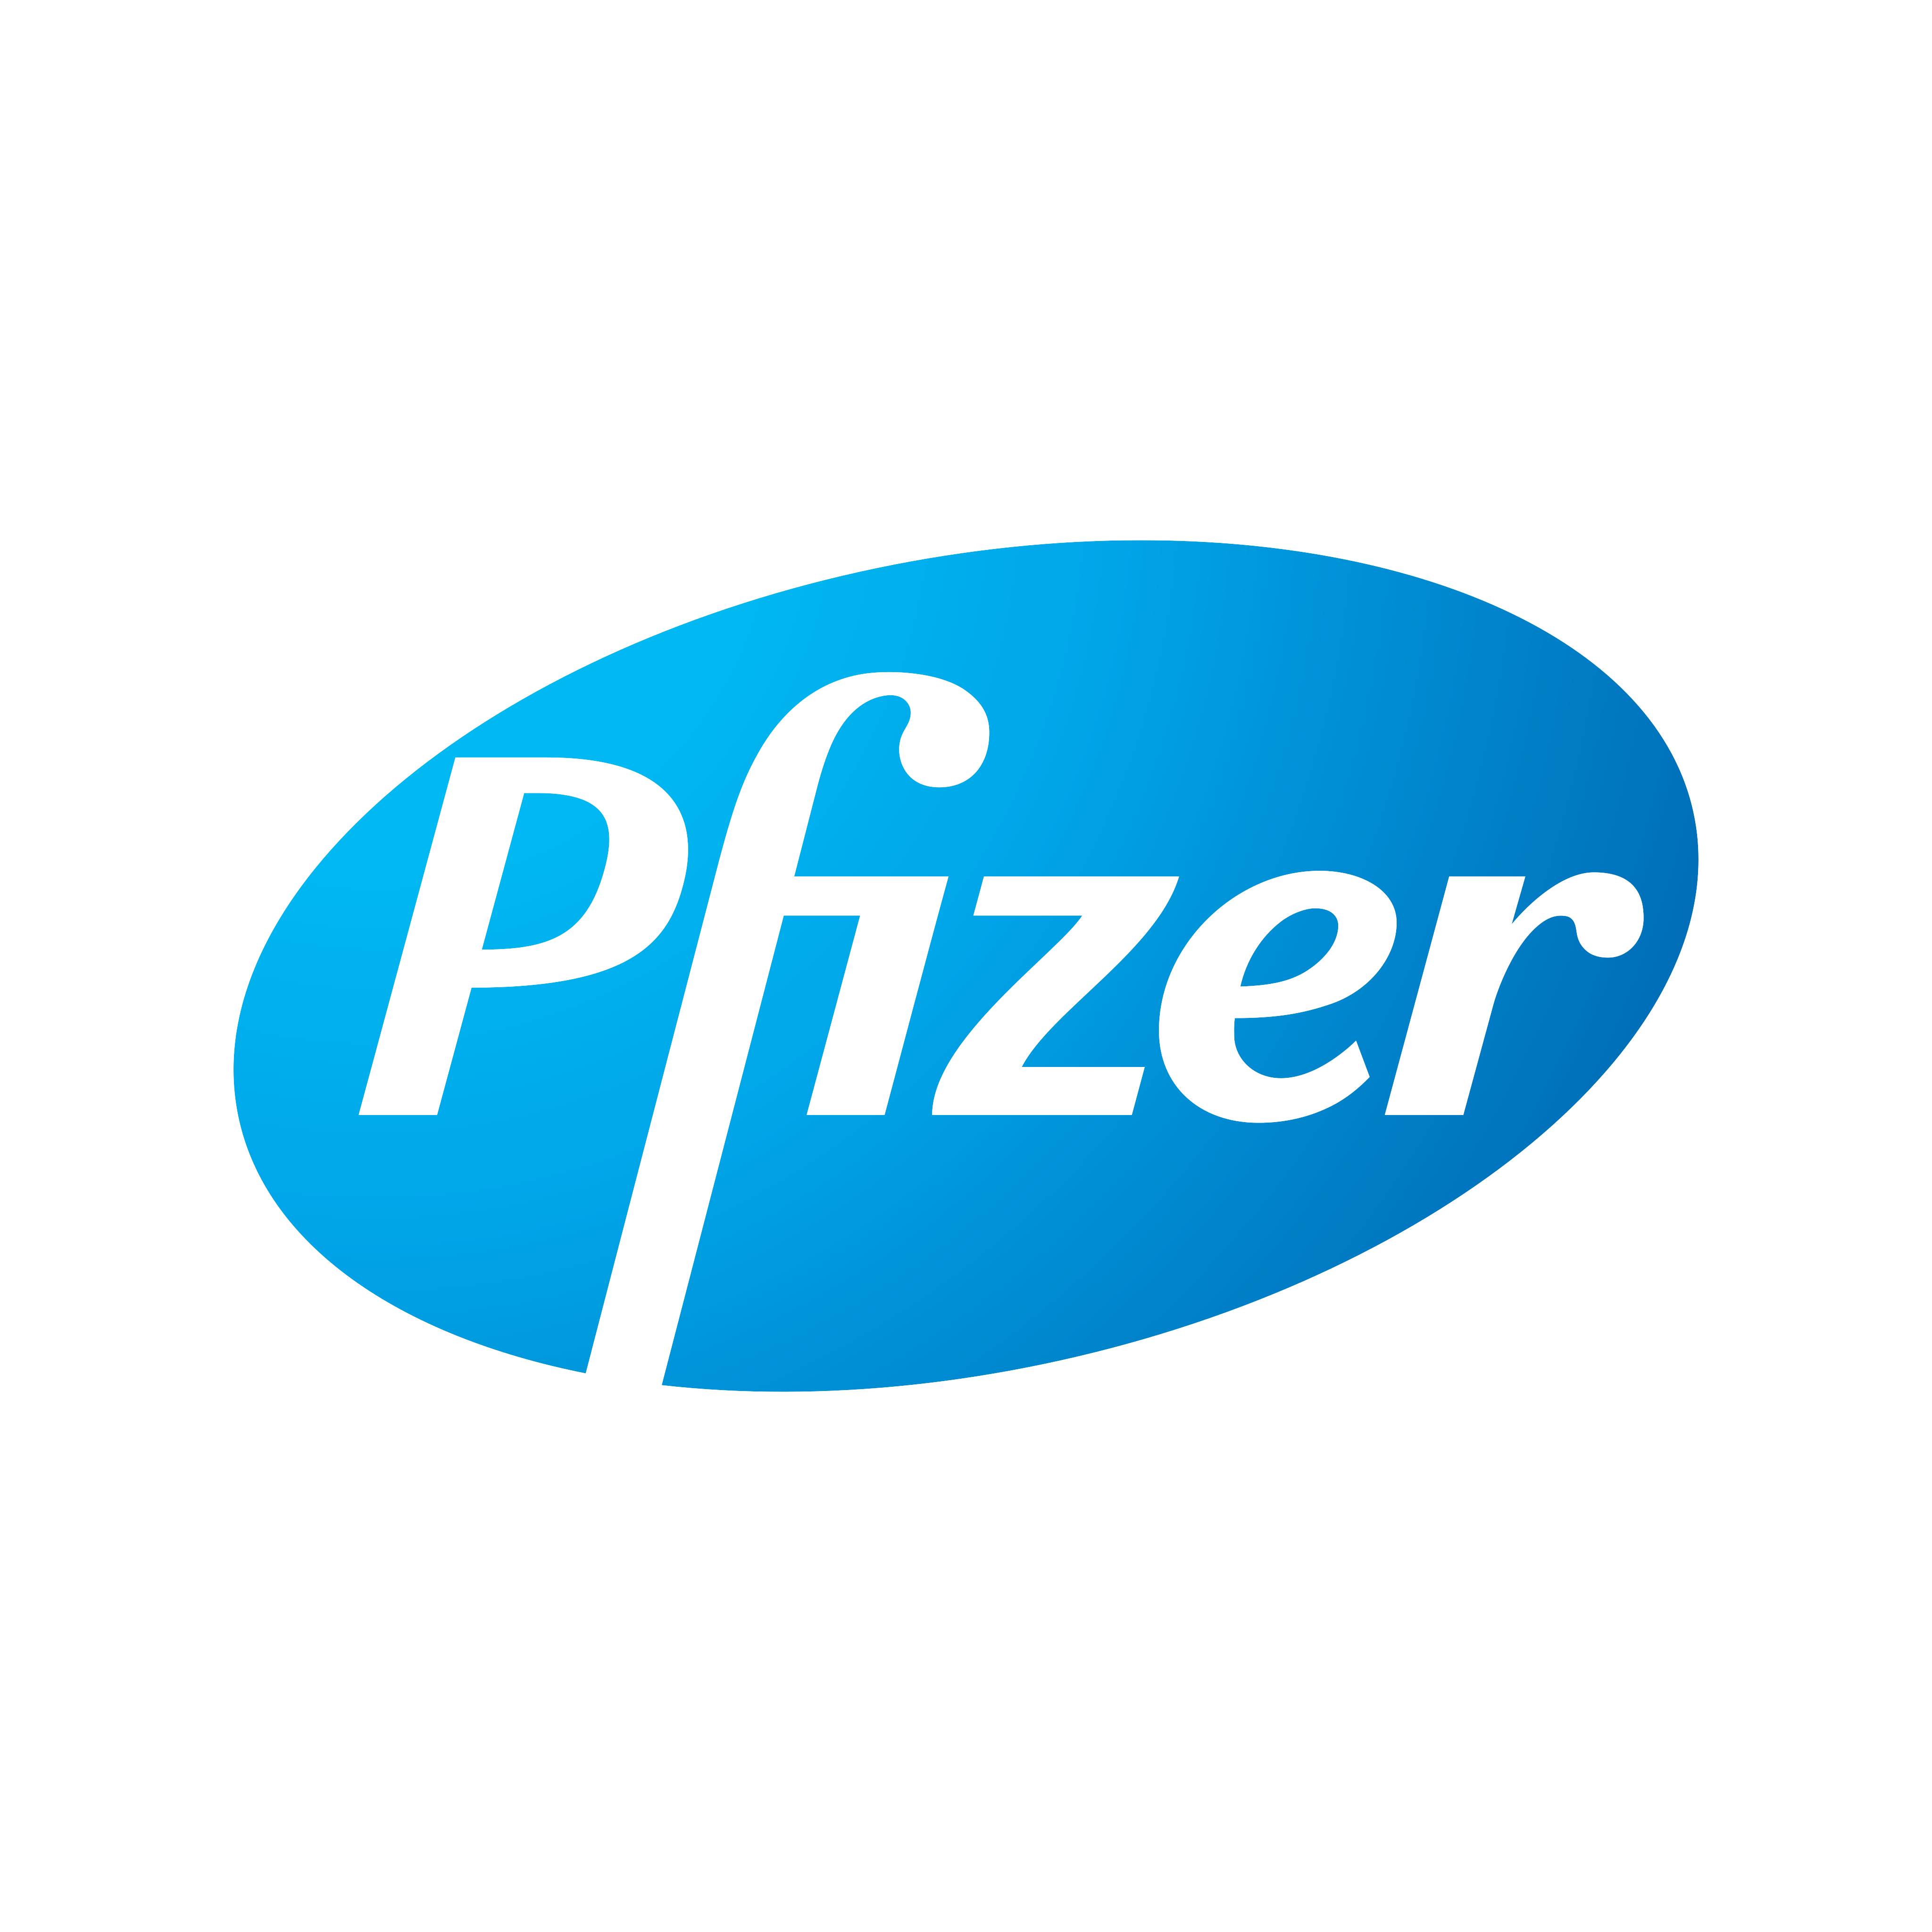 yH5BAEAAAAALAAAAAABAAEAAAIBRAA7 - Pfizer Logo